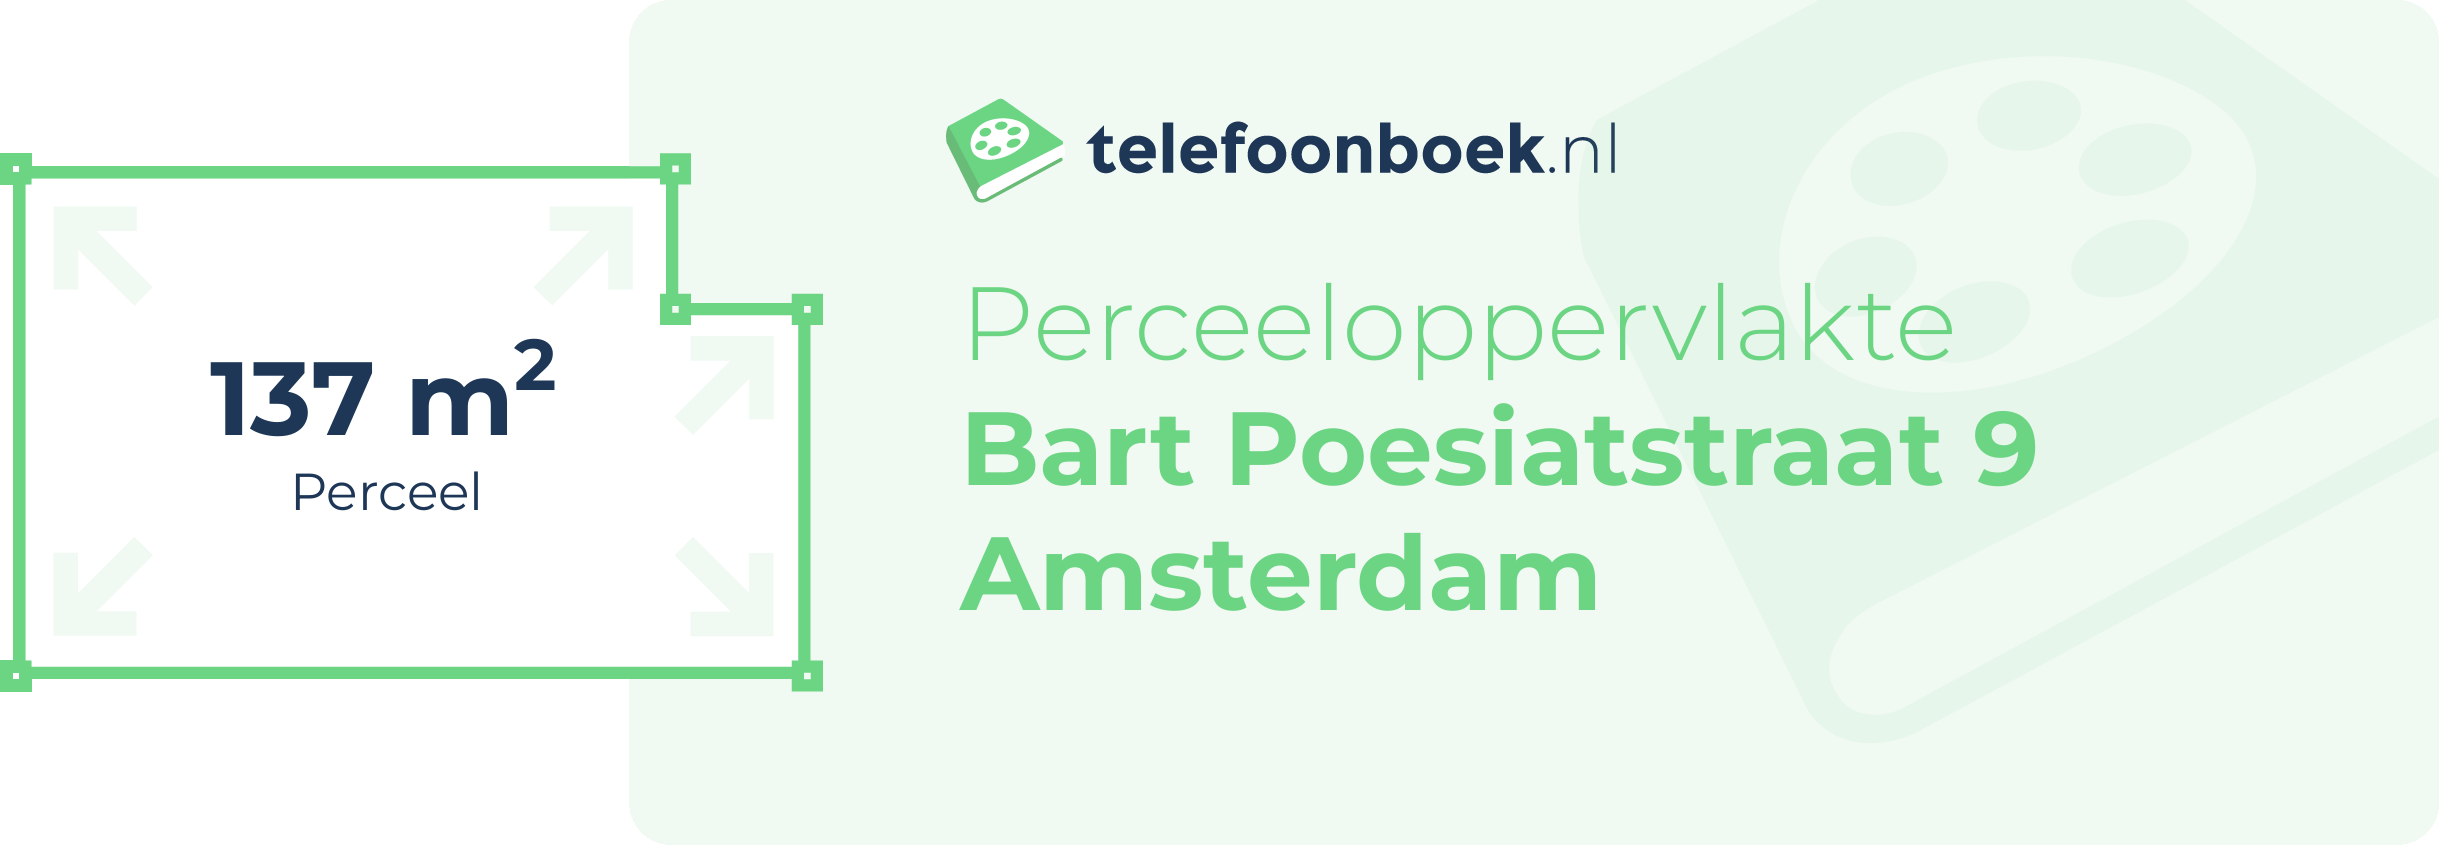 Perceeloppervlakte Bart Poesiatstraat 9 Amsterdam